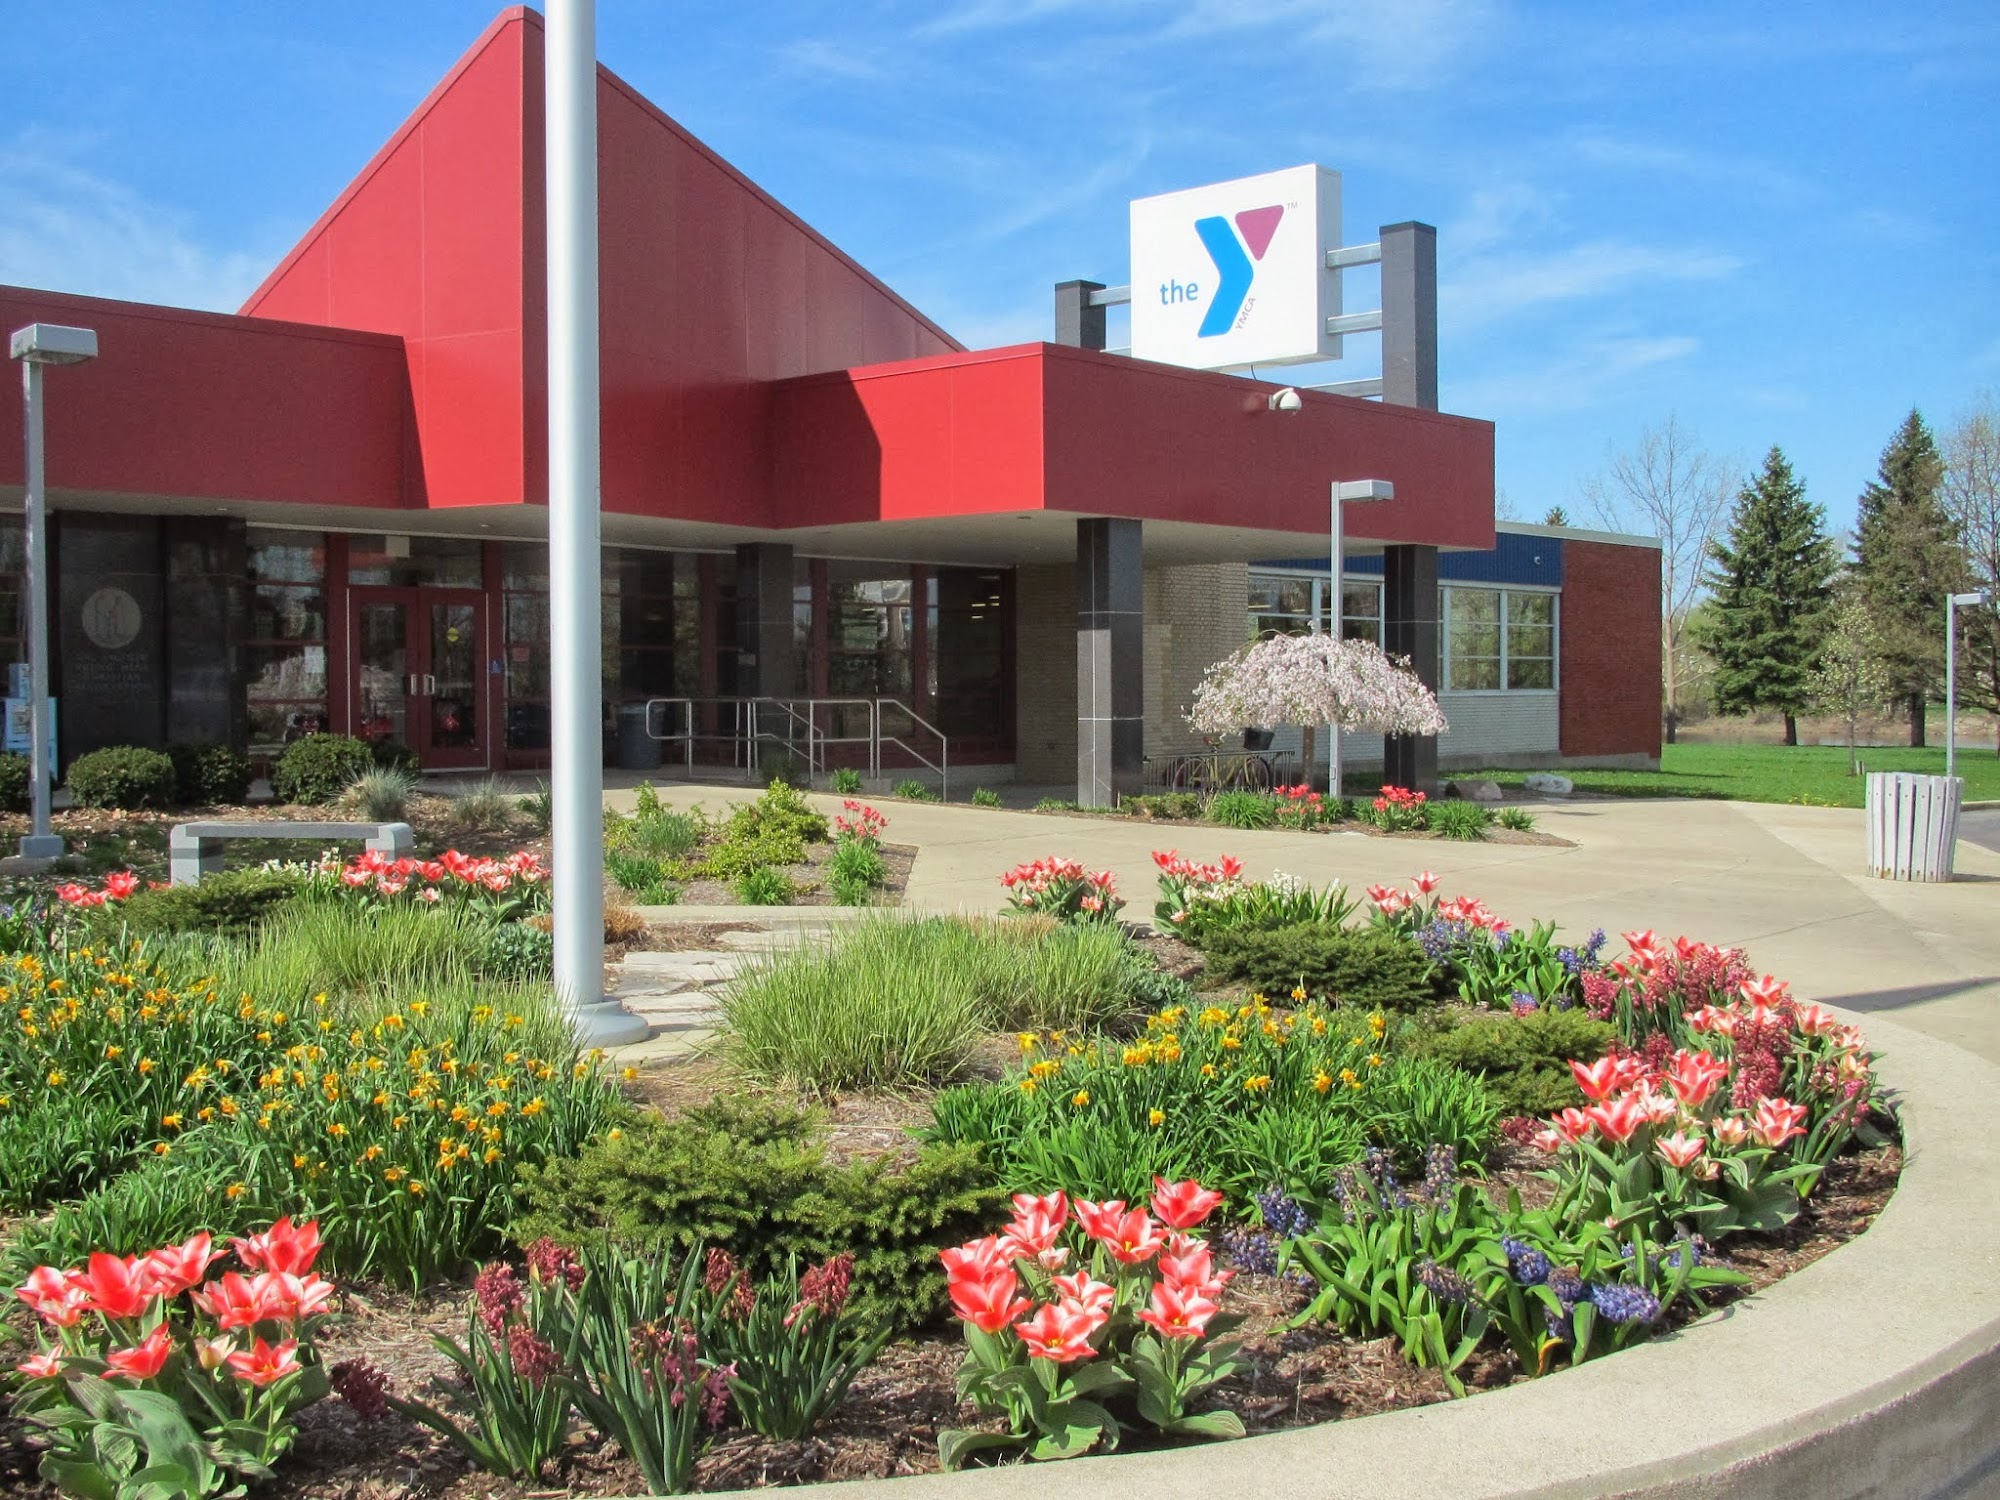 YMCA of Saginaw